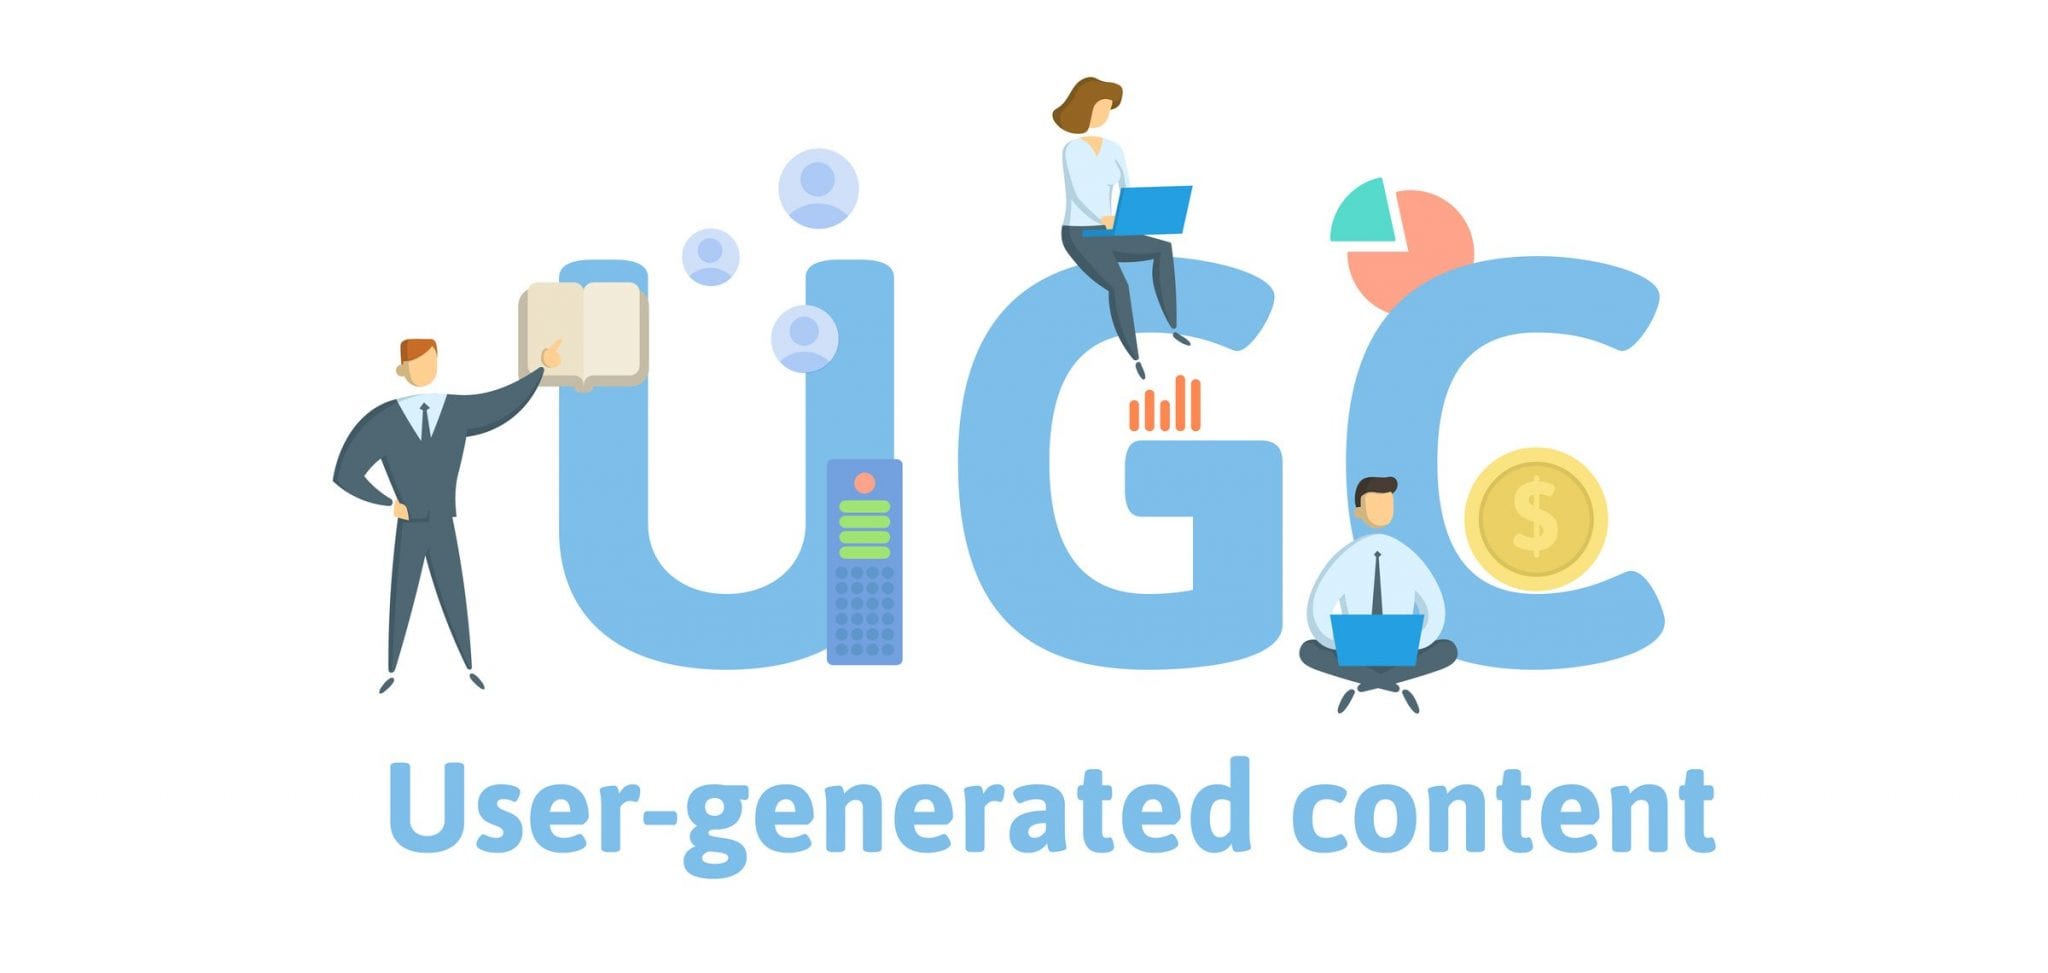 New ugc limited. UGC – пользовательский контент. User generated content. UGC user generated content. UGC картинки.